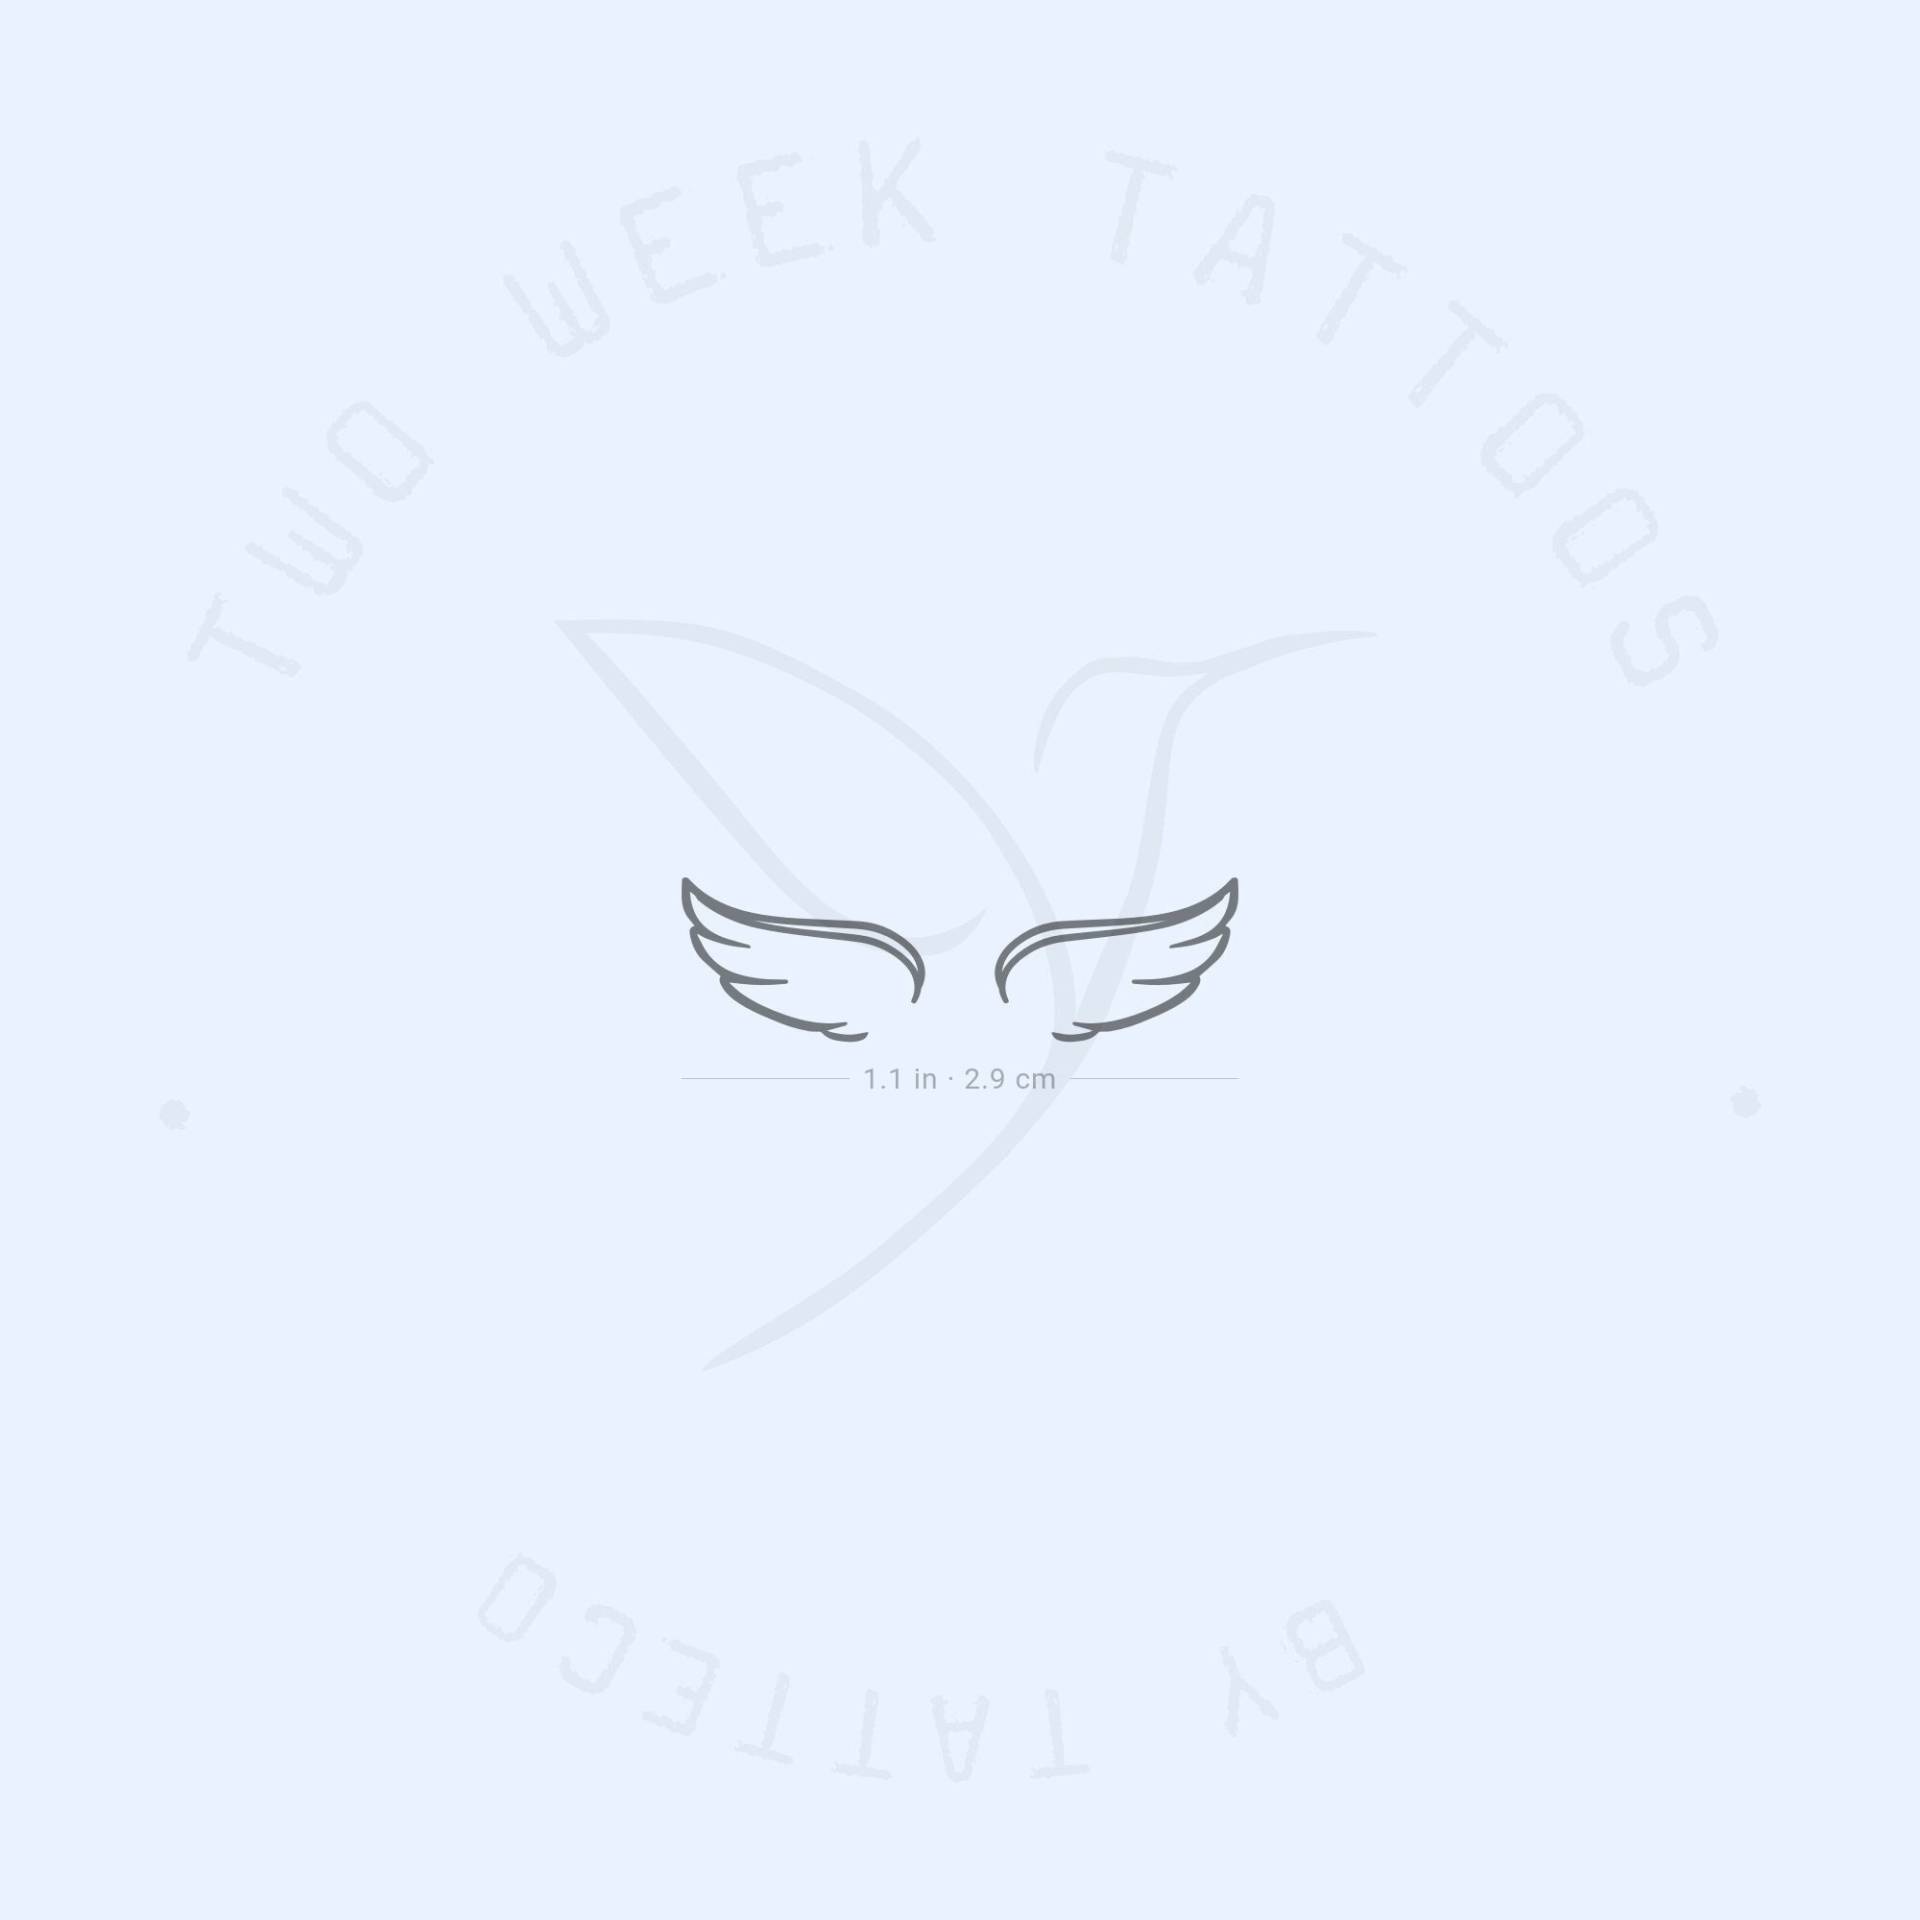 Engelsflügel Paar Semi-Permanent 2-Wochen Tattoo | 2Er Set von Etsy - twoweektattoos